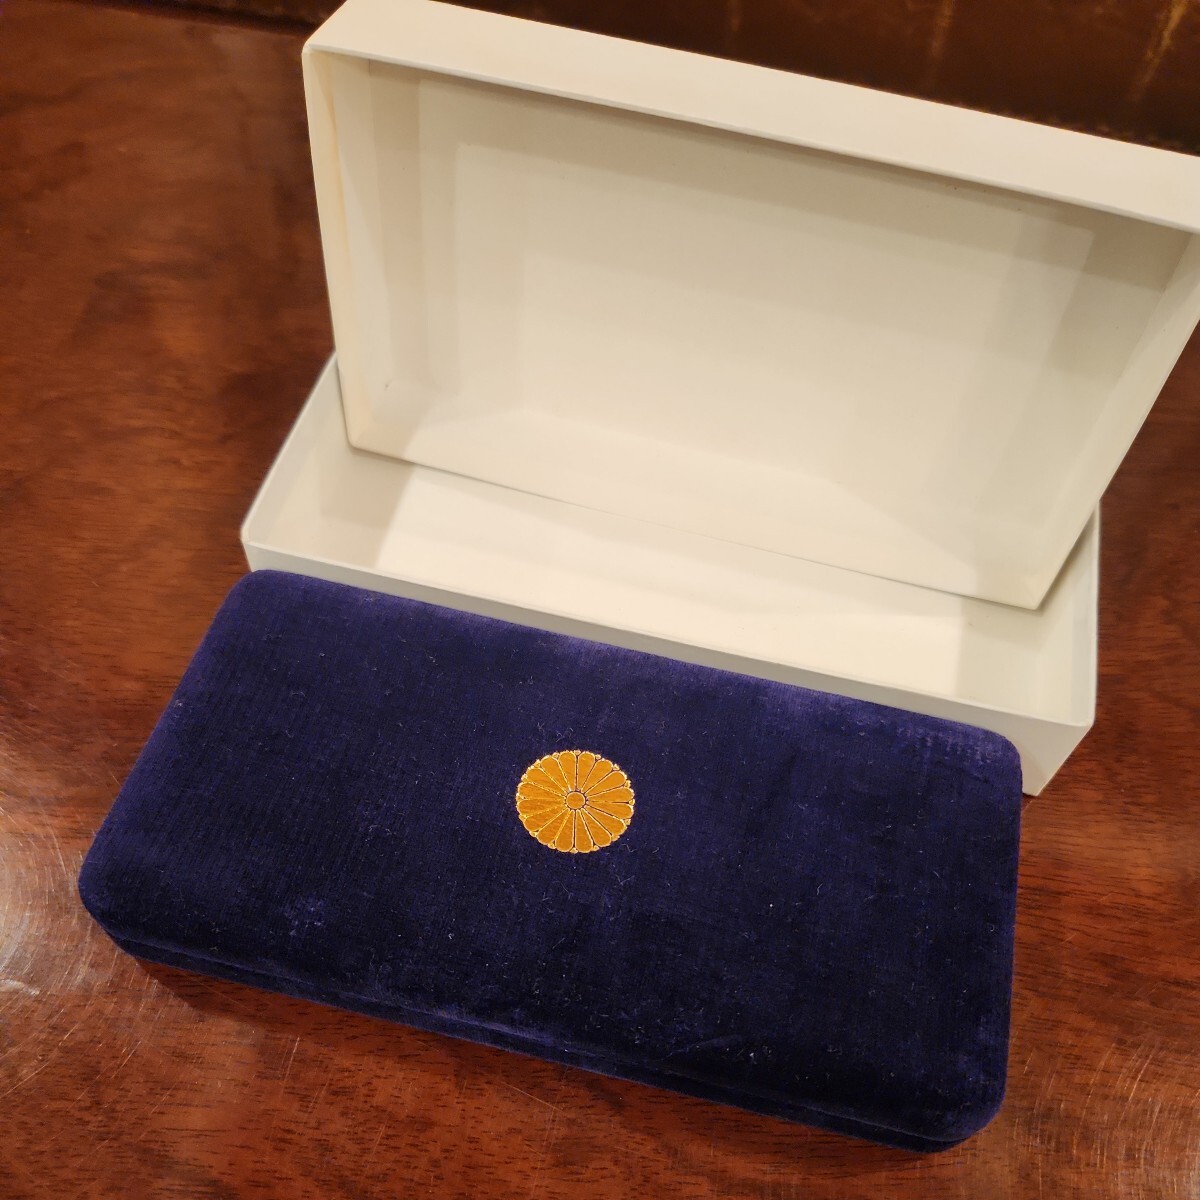 天皇陛下御在位60年記念 昭和61年 10万円金貨 1万円銀貨 500円白銅貨 ケース 箱入り_画像9